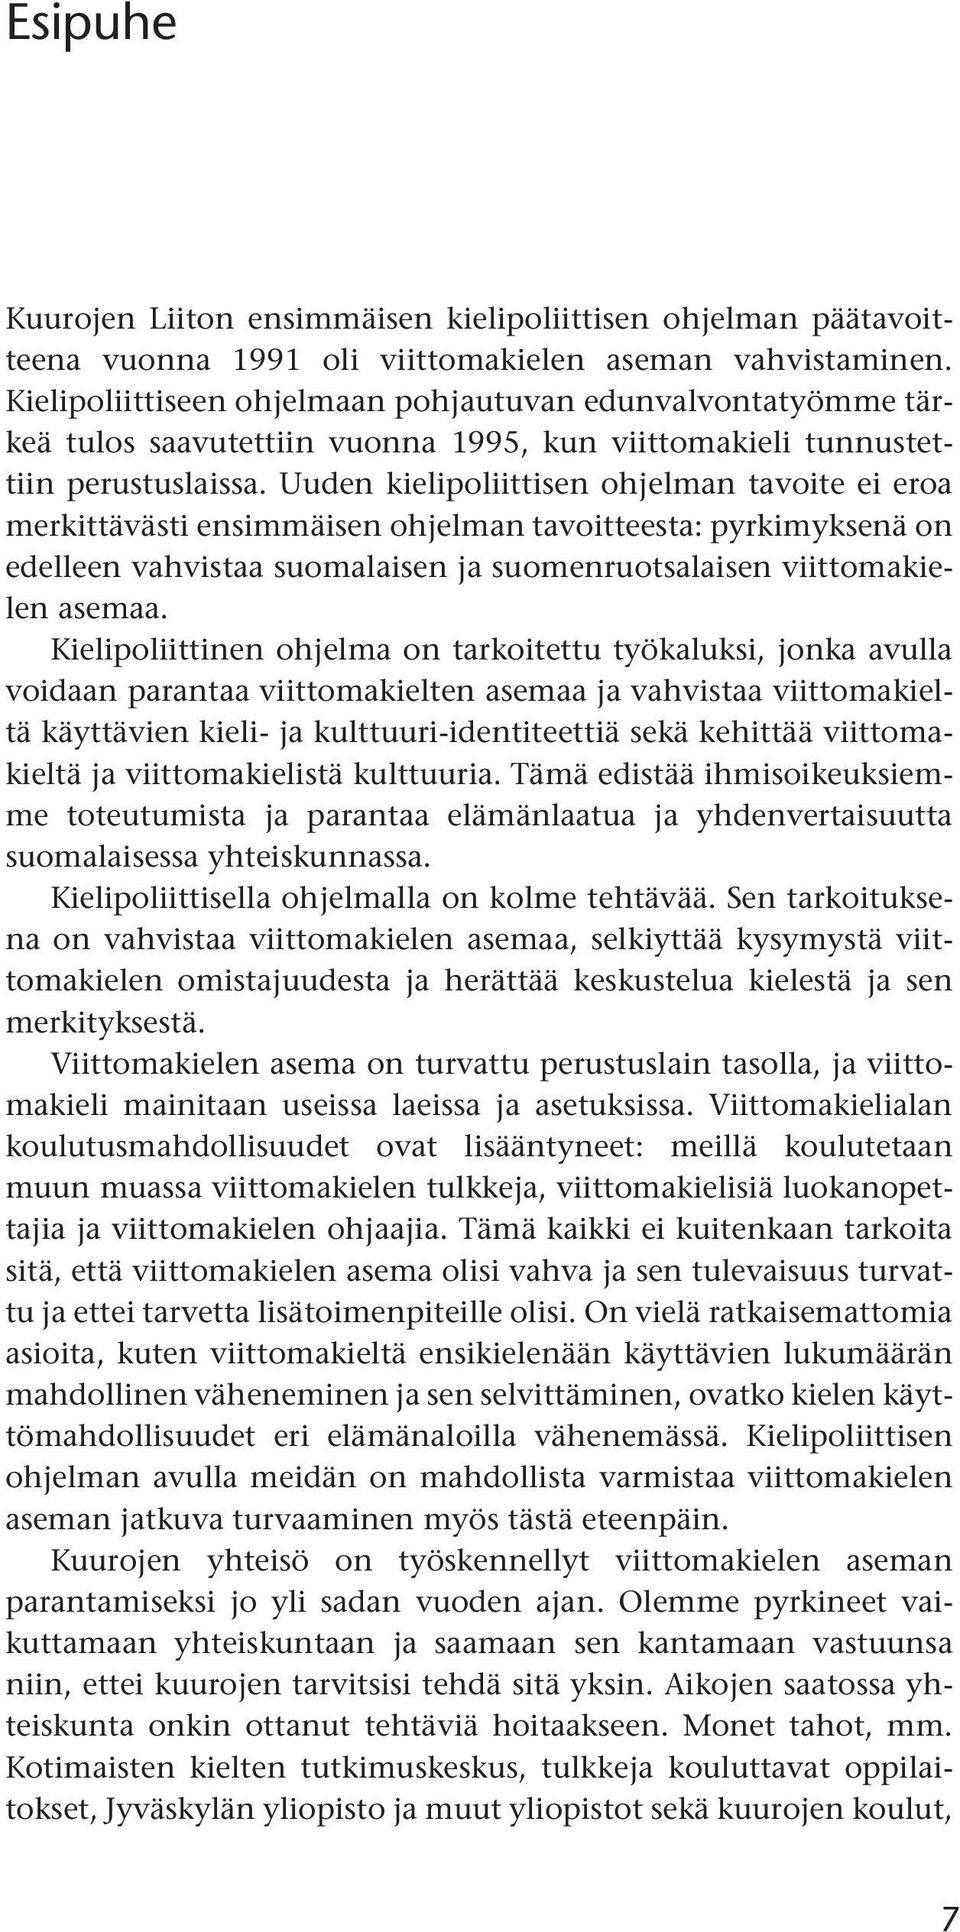 Uuden kielipoliittisen ohjelman tavoite ei eroa merkittävästi ensimmäisen ohjelman tavoitteesta: pyrkimyksenä on edelleen vahvistaa suomalaisen ja suomenruotsalaisen viittomakielen asemaa.